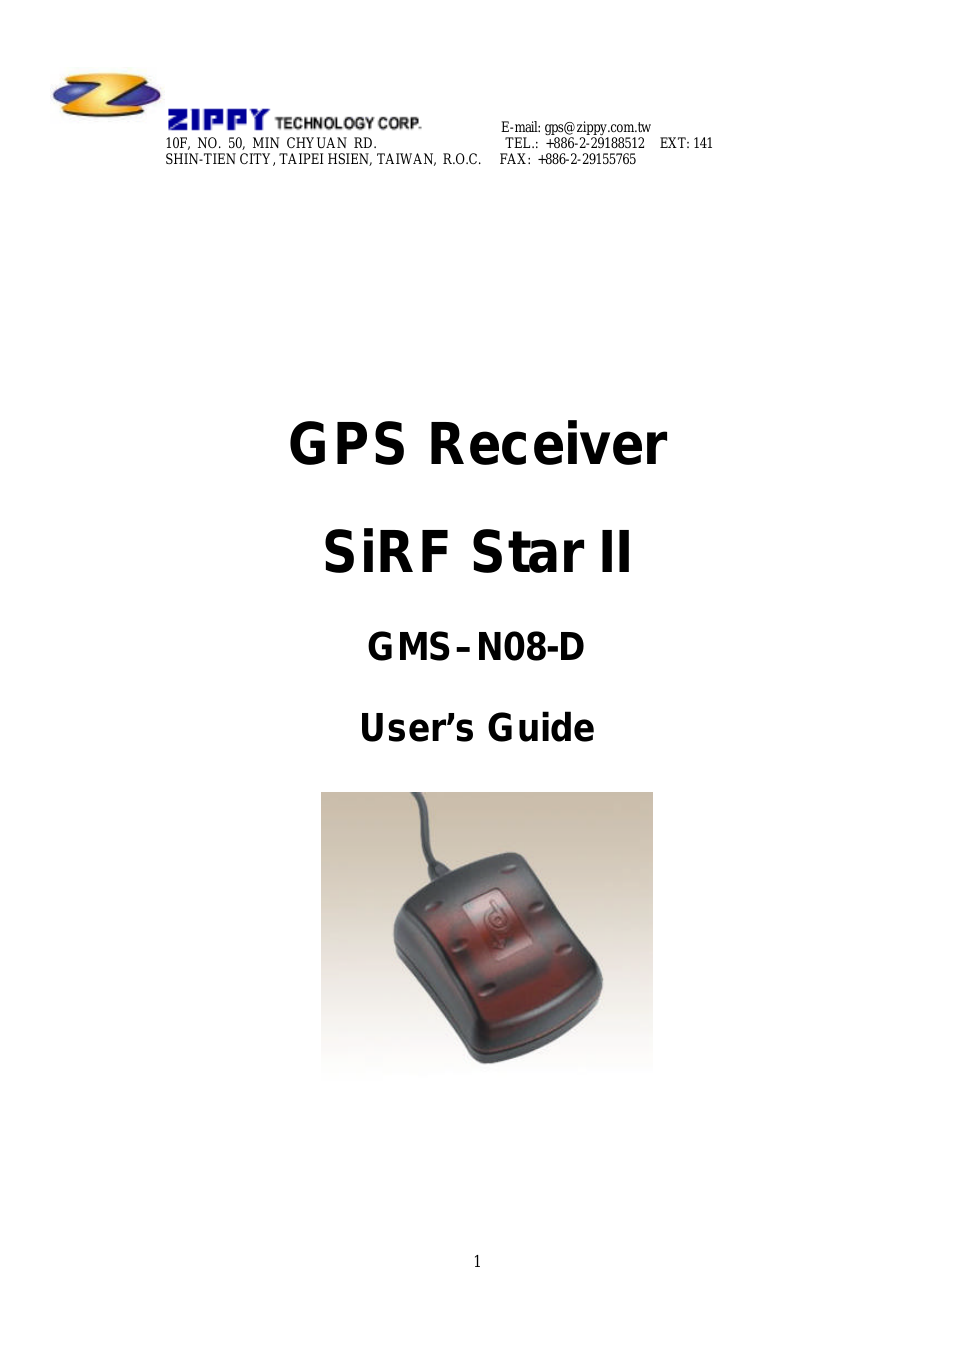 SIRF STAR II GMSN08-D